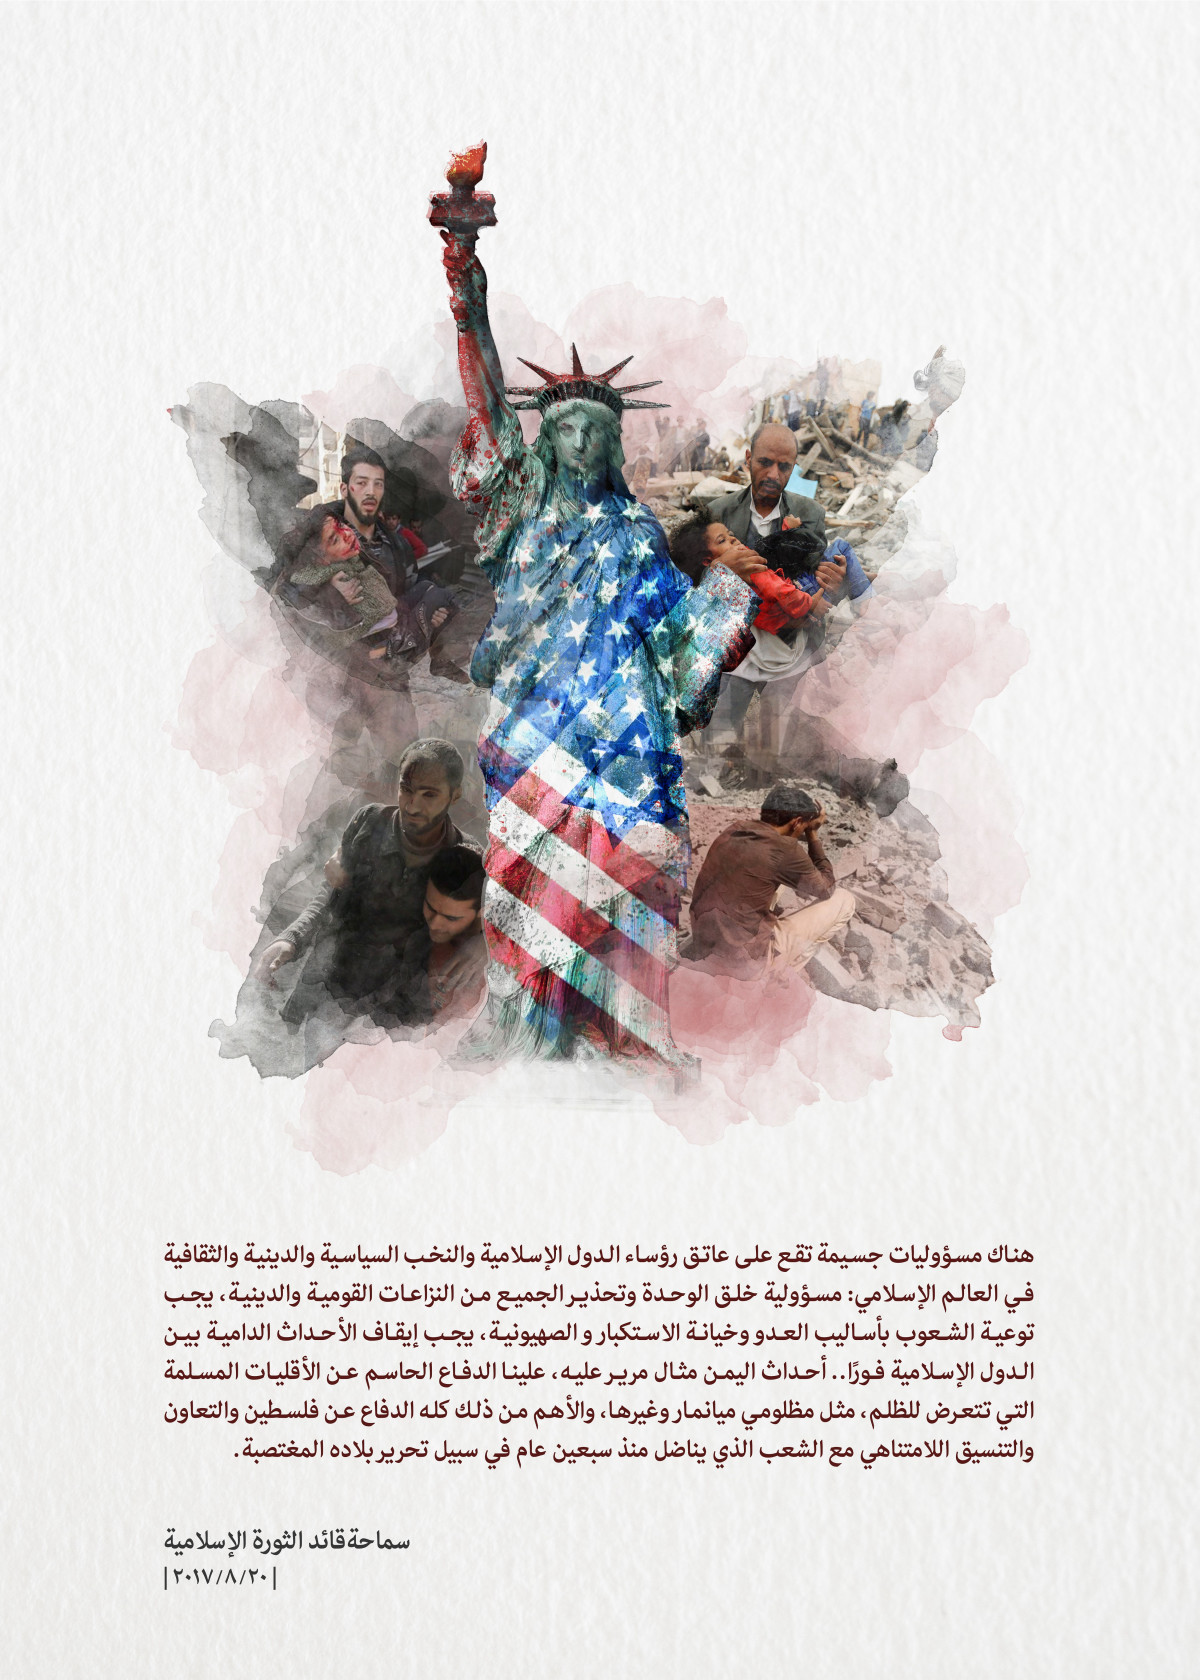 الوحدة في كلام القائد الثورة الإسلامية / يجب توعية الشعوب بأساليب العدو